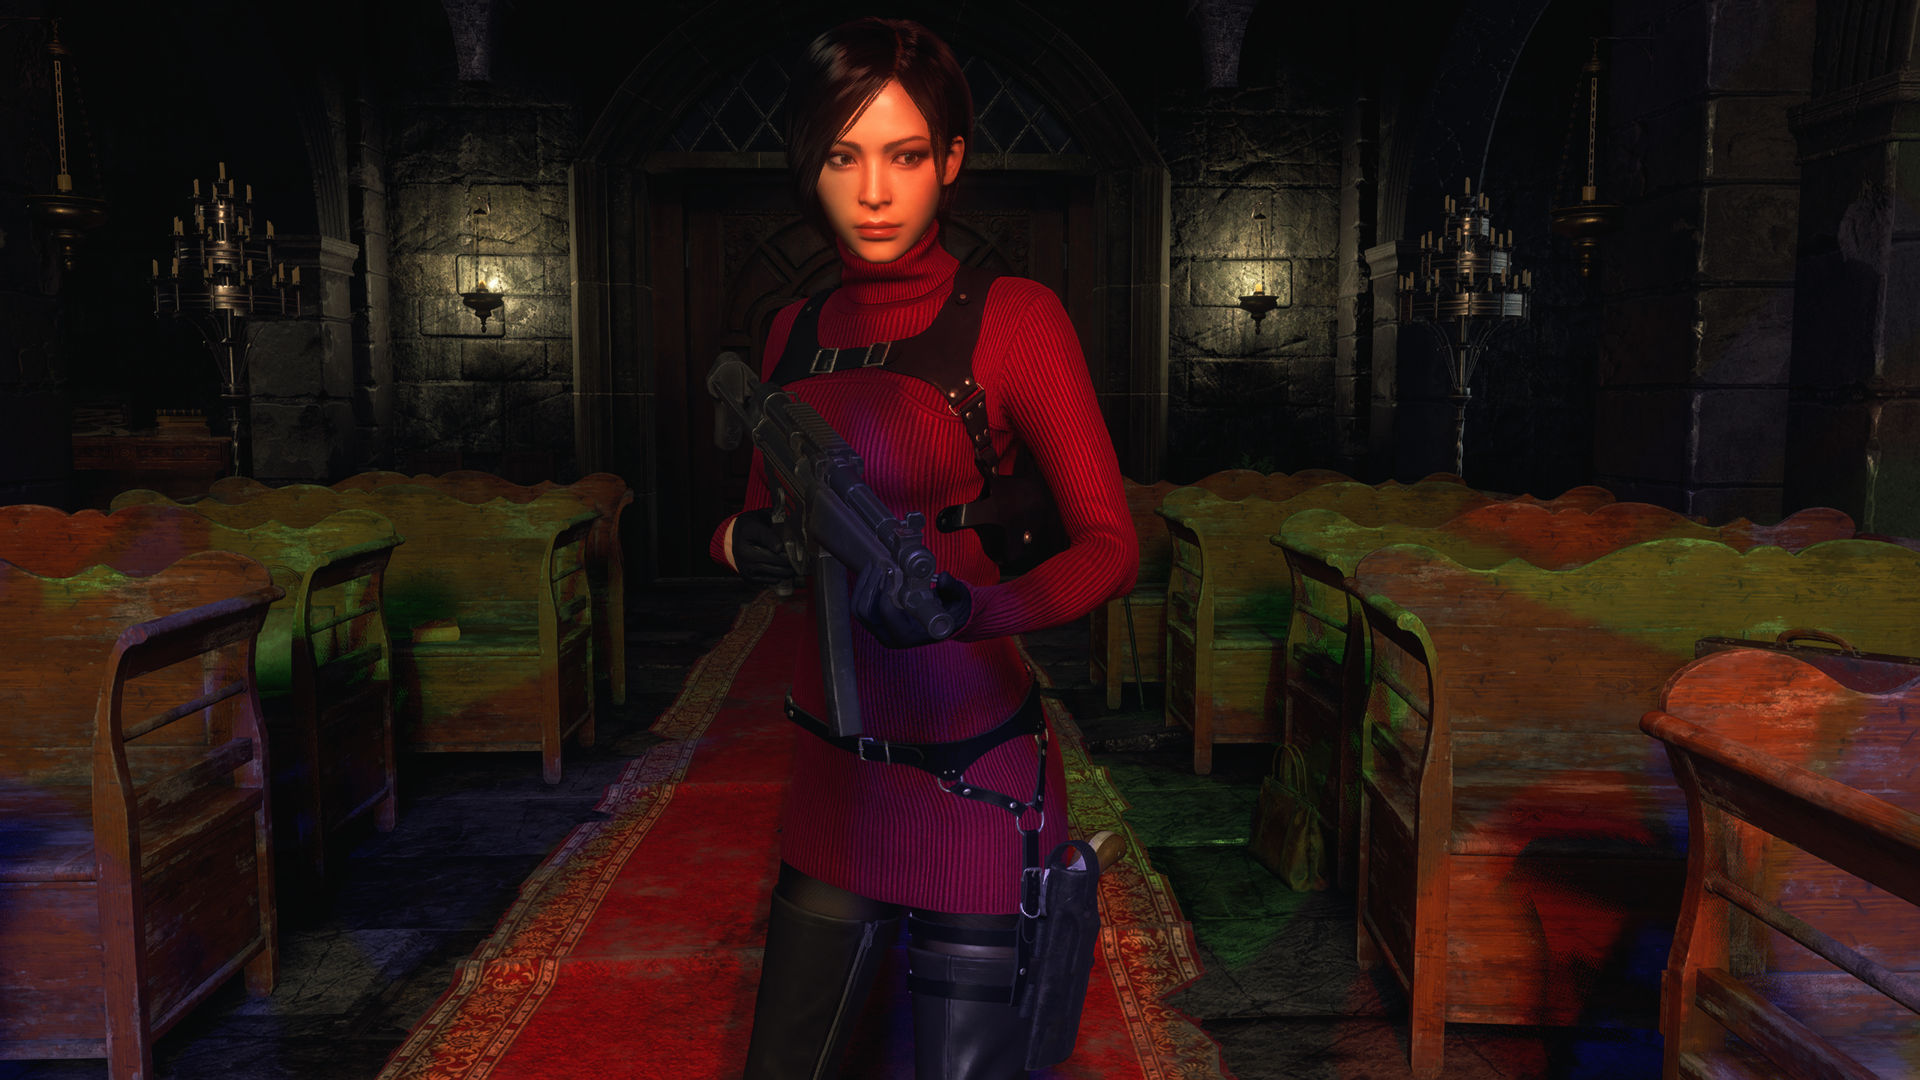 Resident Evil 4 Remake - Ada Wong by elqldjsxmdkxmektzja on DeviantArt